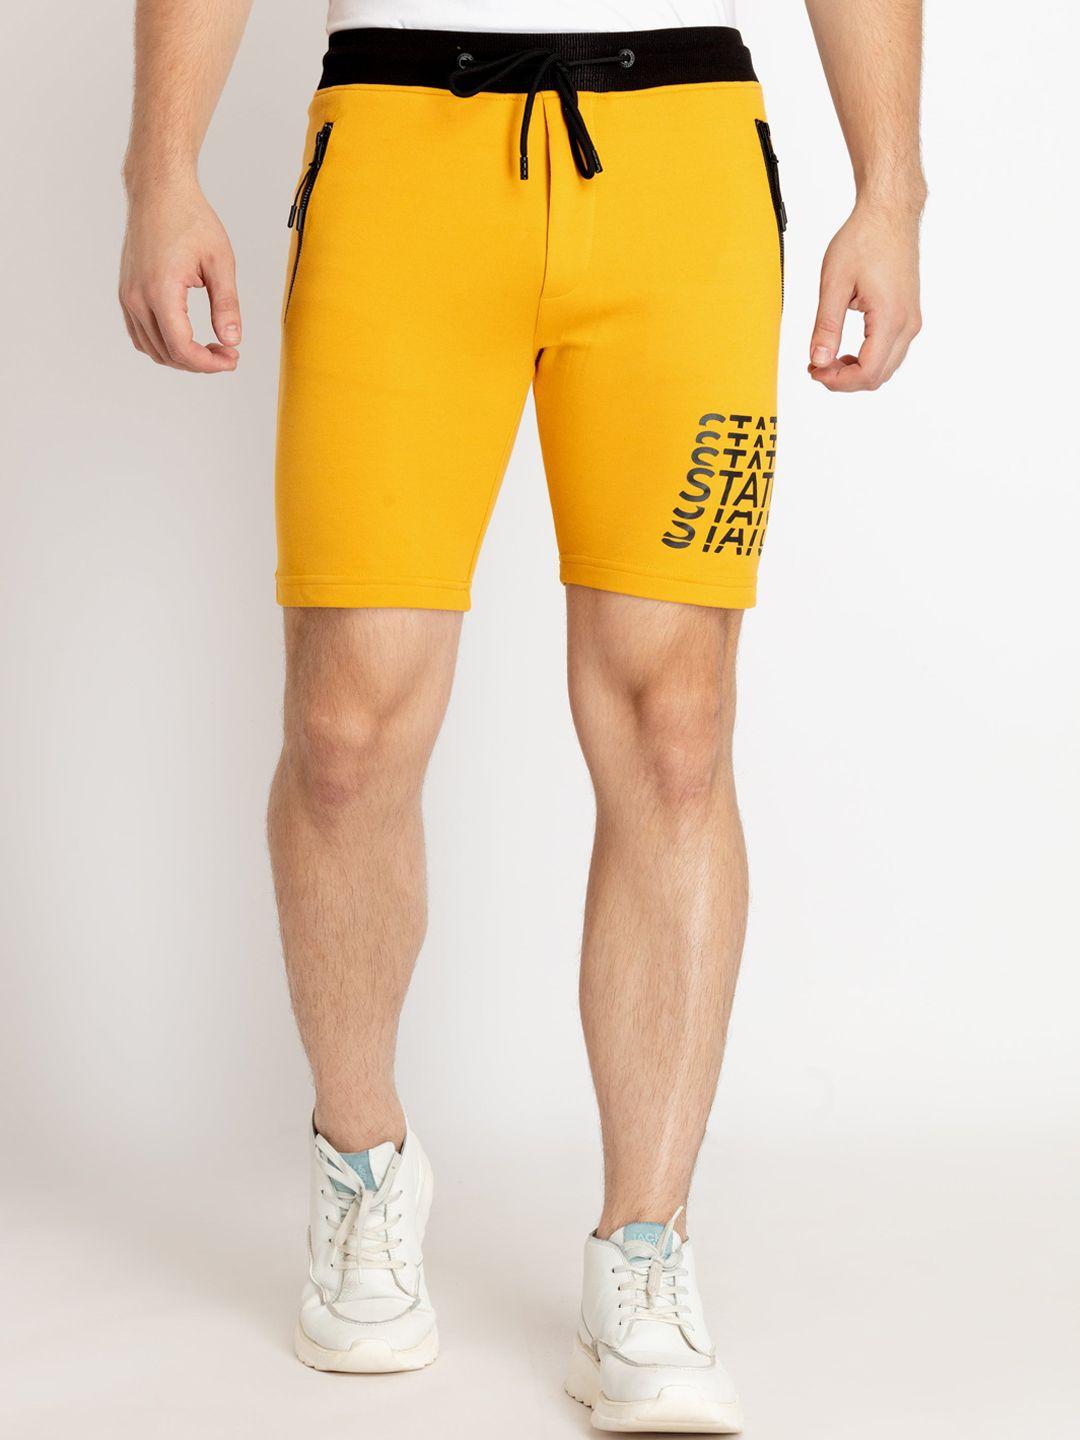 status quo men cotton mid-rise shorts